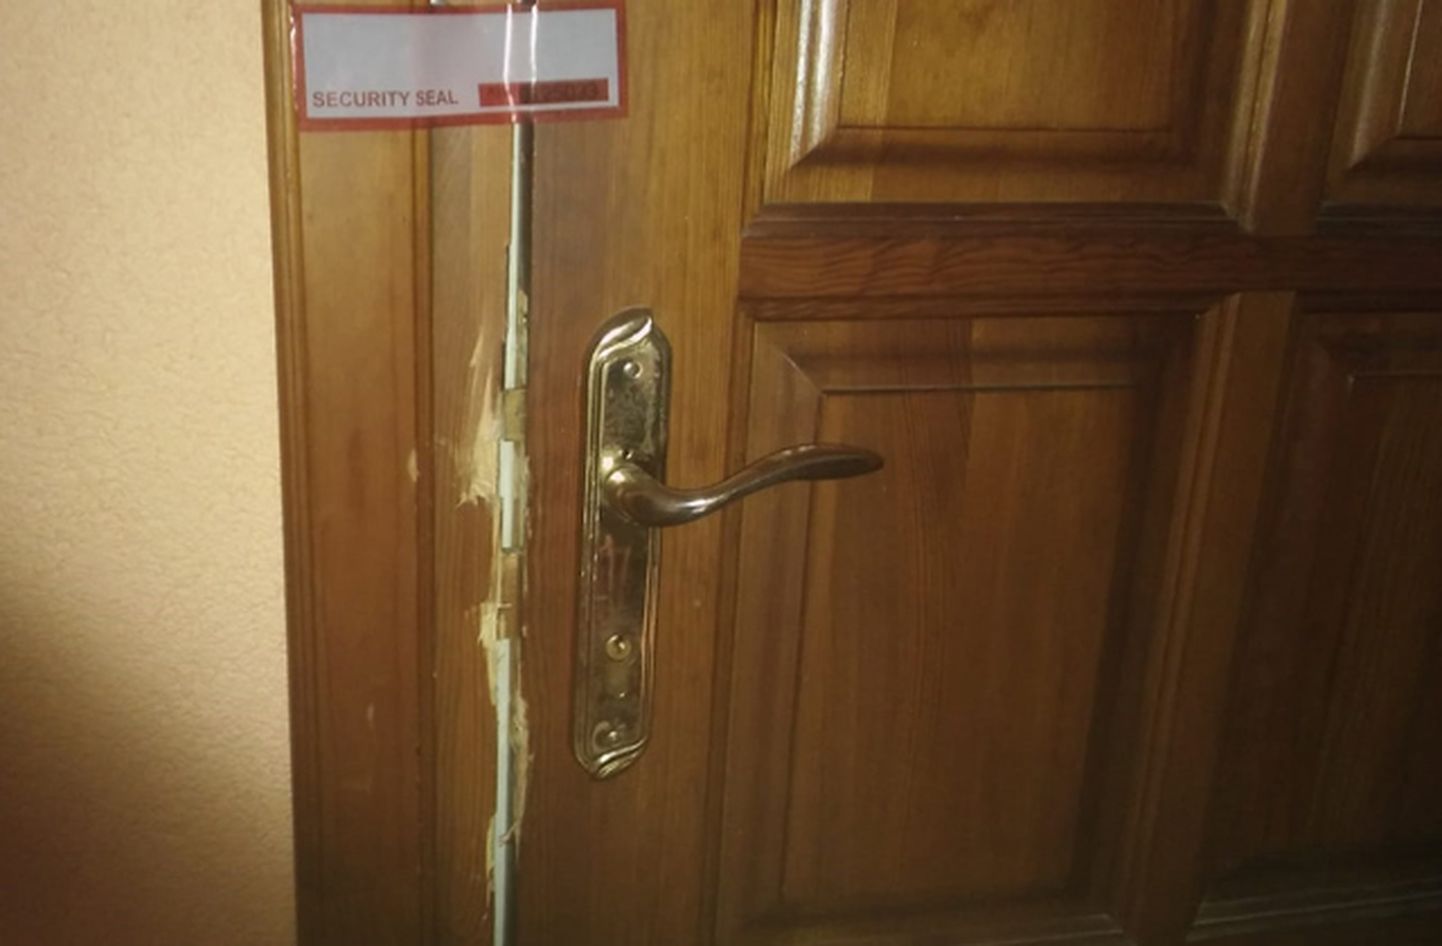 Дверь взломанной квартиры. Иллюстративное фото